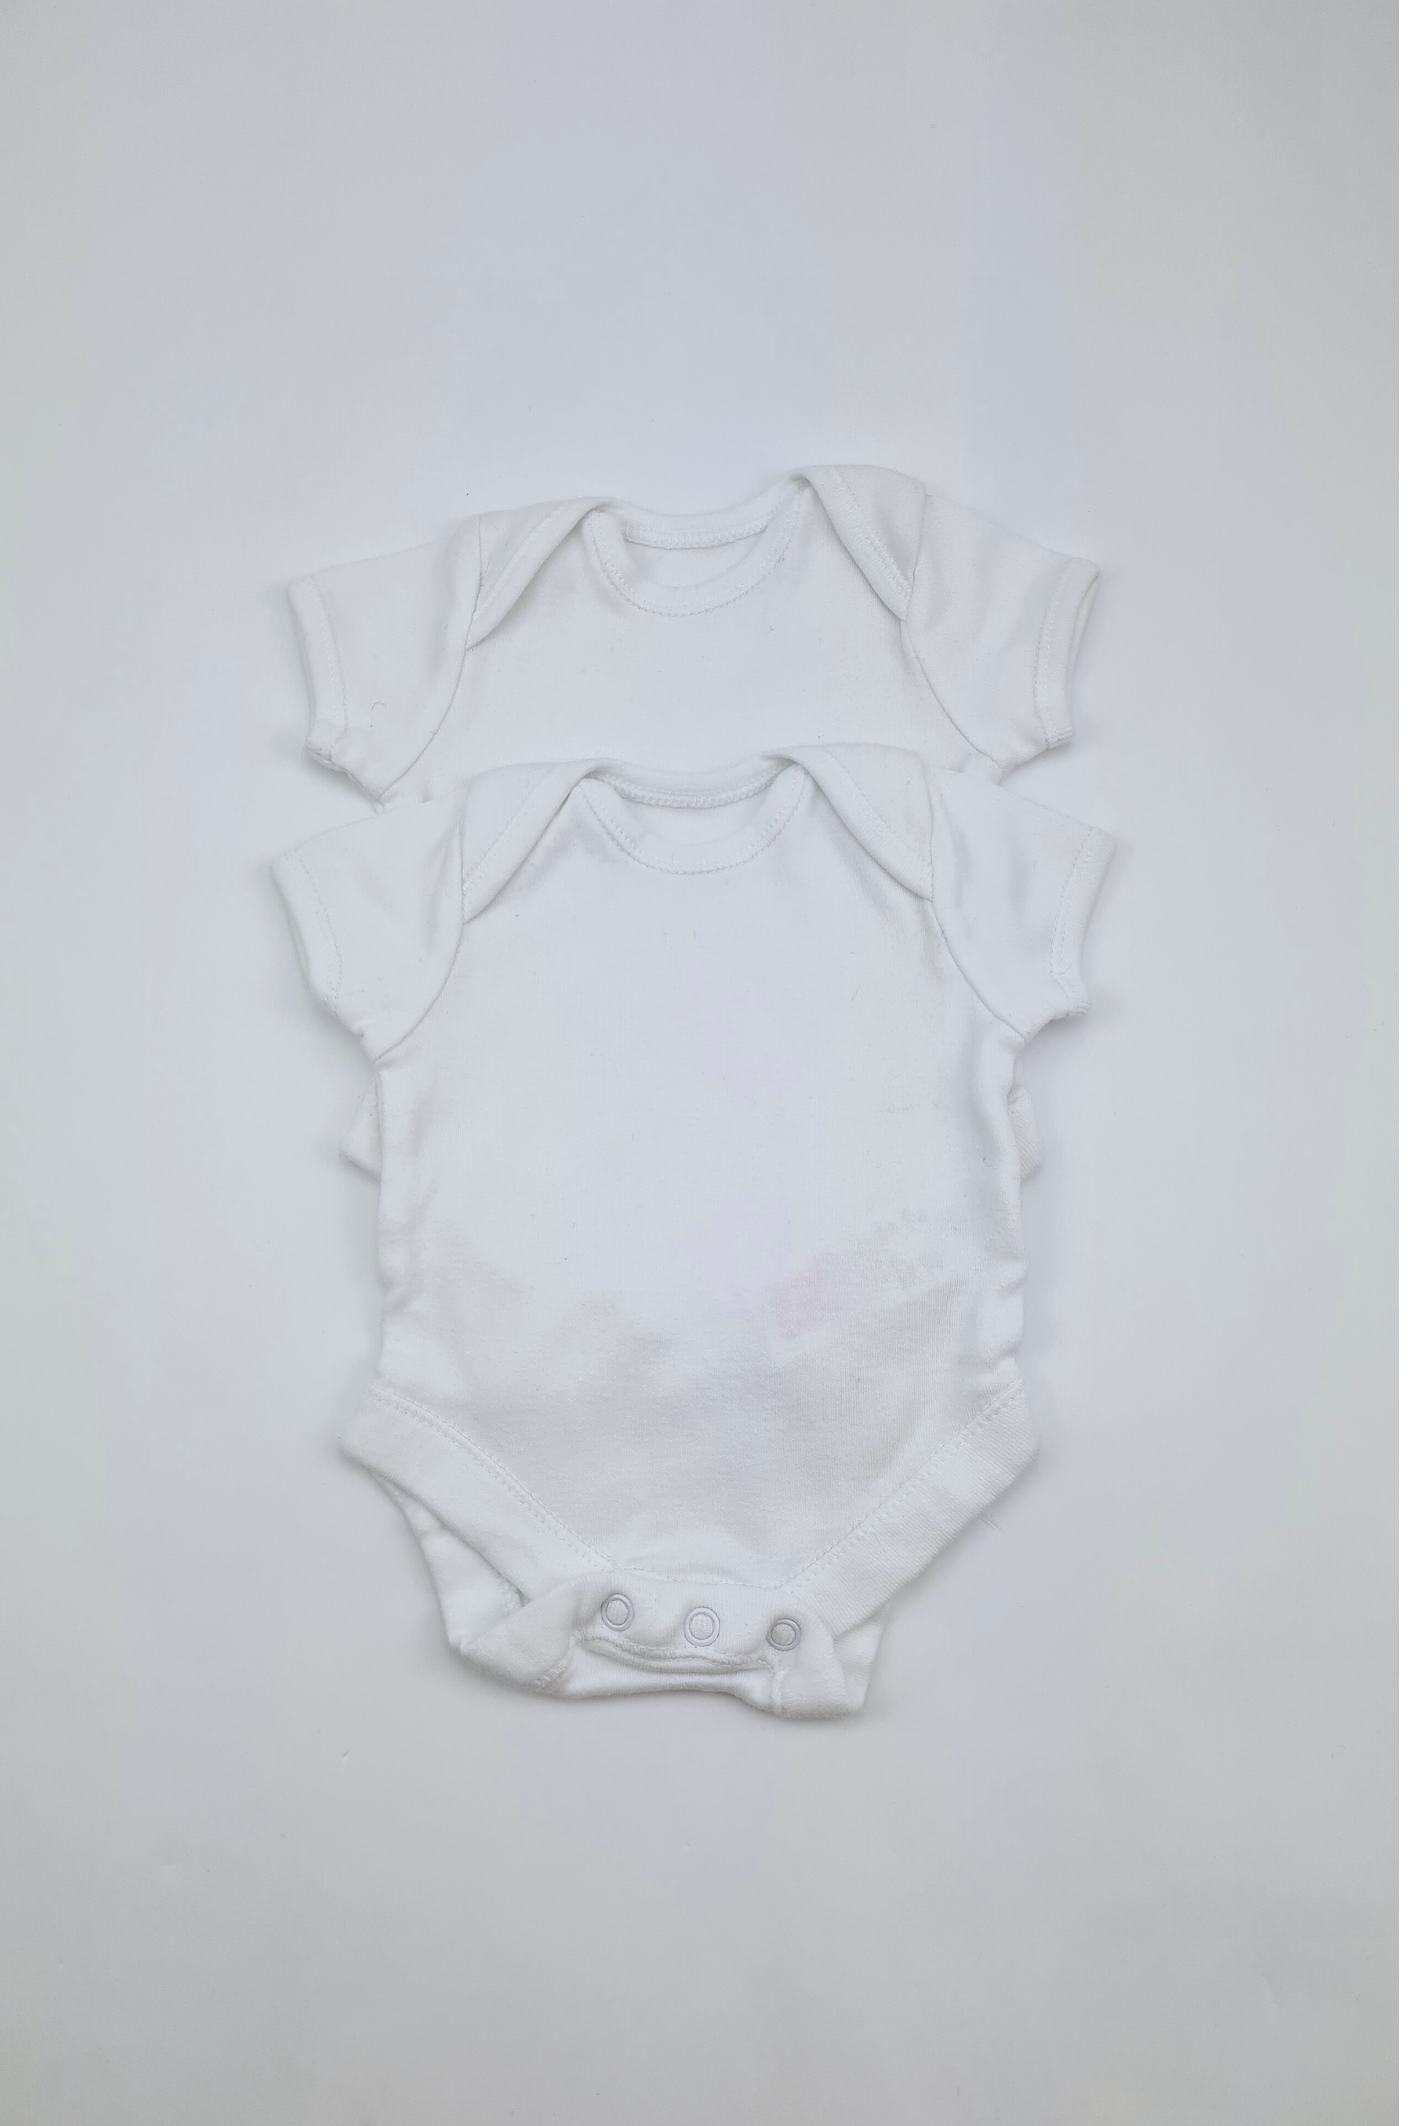 Newborn - 100% Cotton 7.5lbs/3.4kg Bodysuit Set (Mothercare)